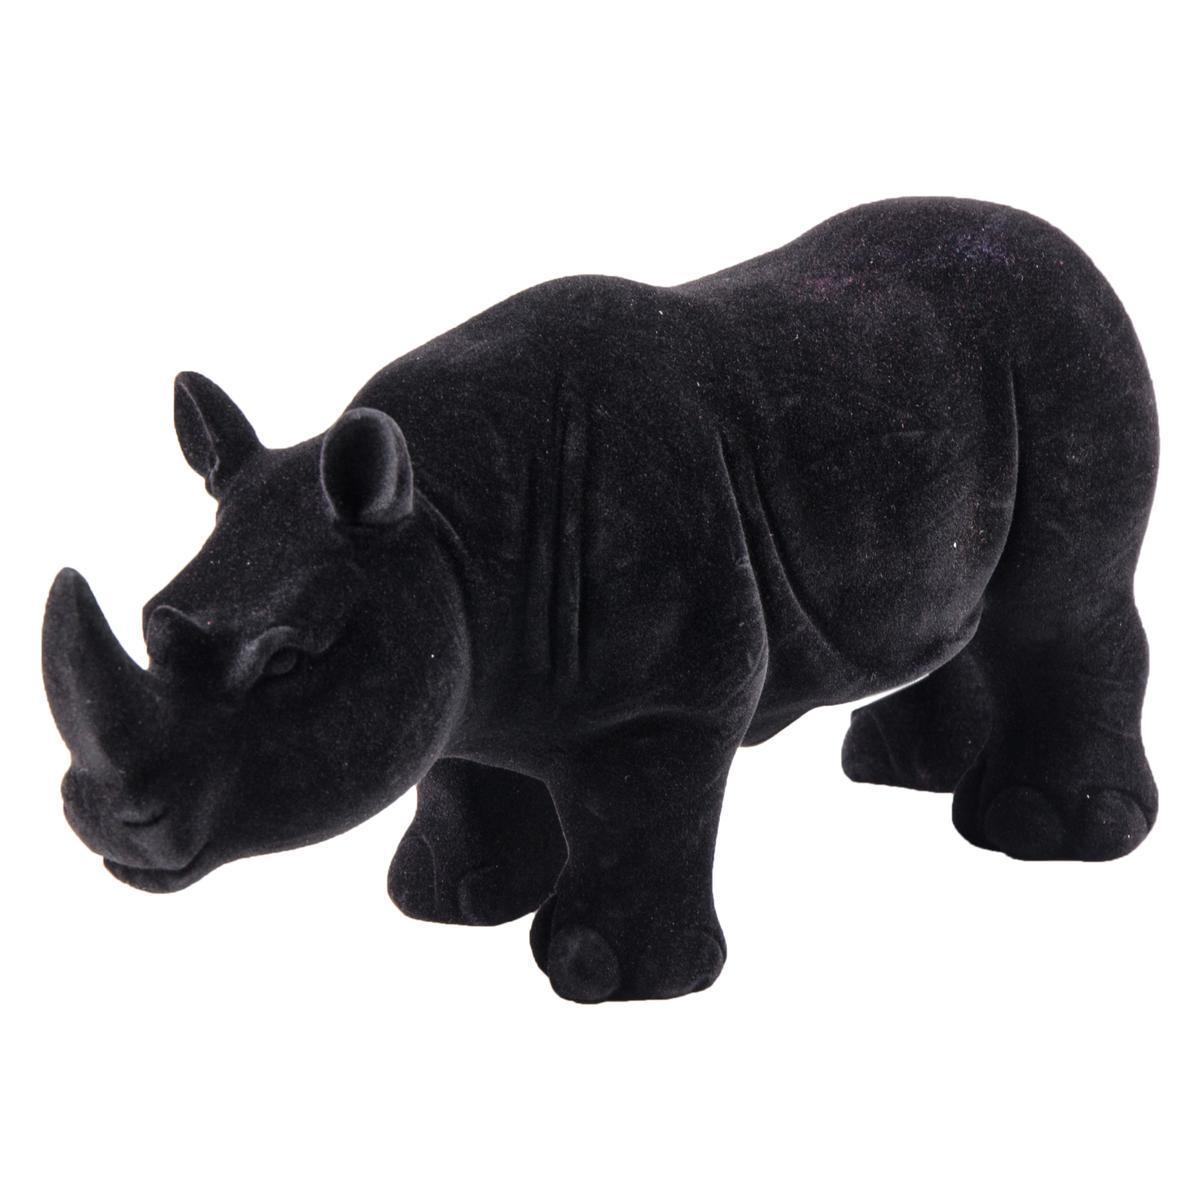 Statue rhinocéros en résine - 27 x 9,5 x 12,5 cm - Orange ou Noir